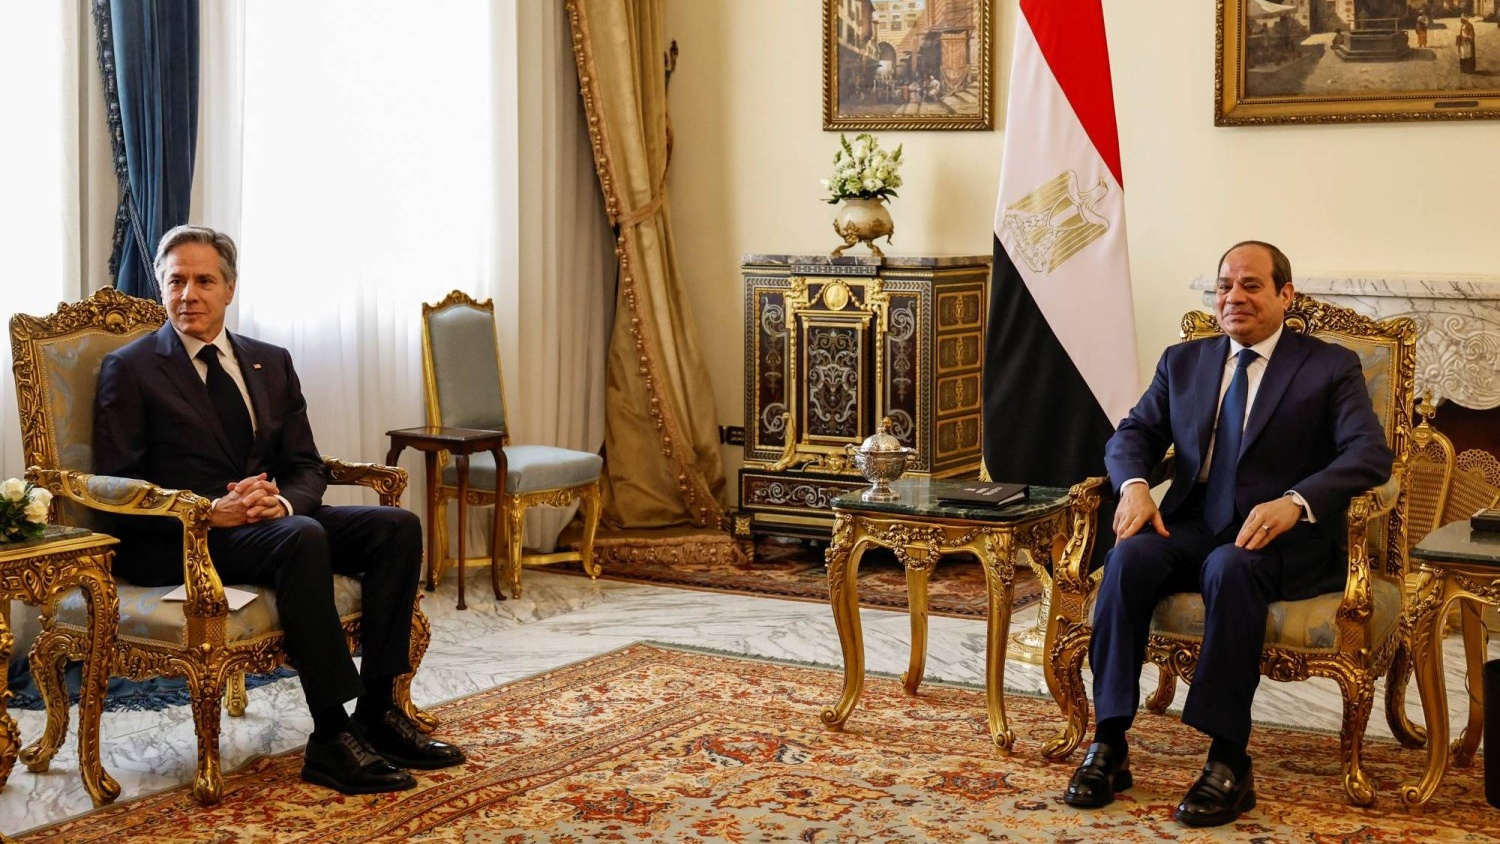 الرئيس المصري عبدالفتاح السيسي خلال لقائه مع وزير الخارجية الأميركي أنتوني بلينكن في القاهرة